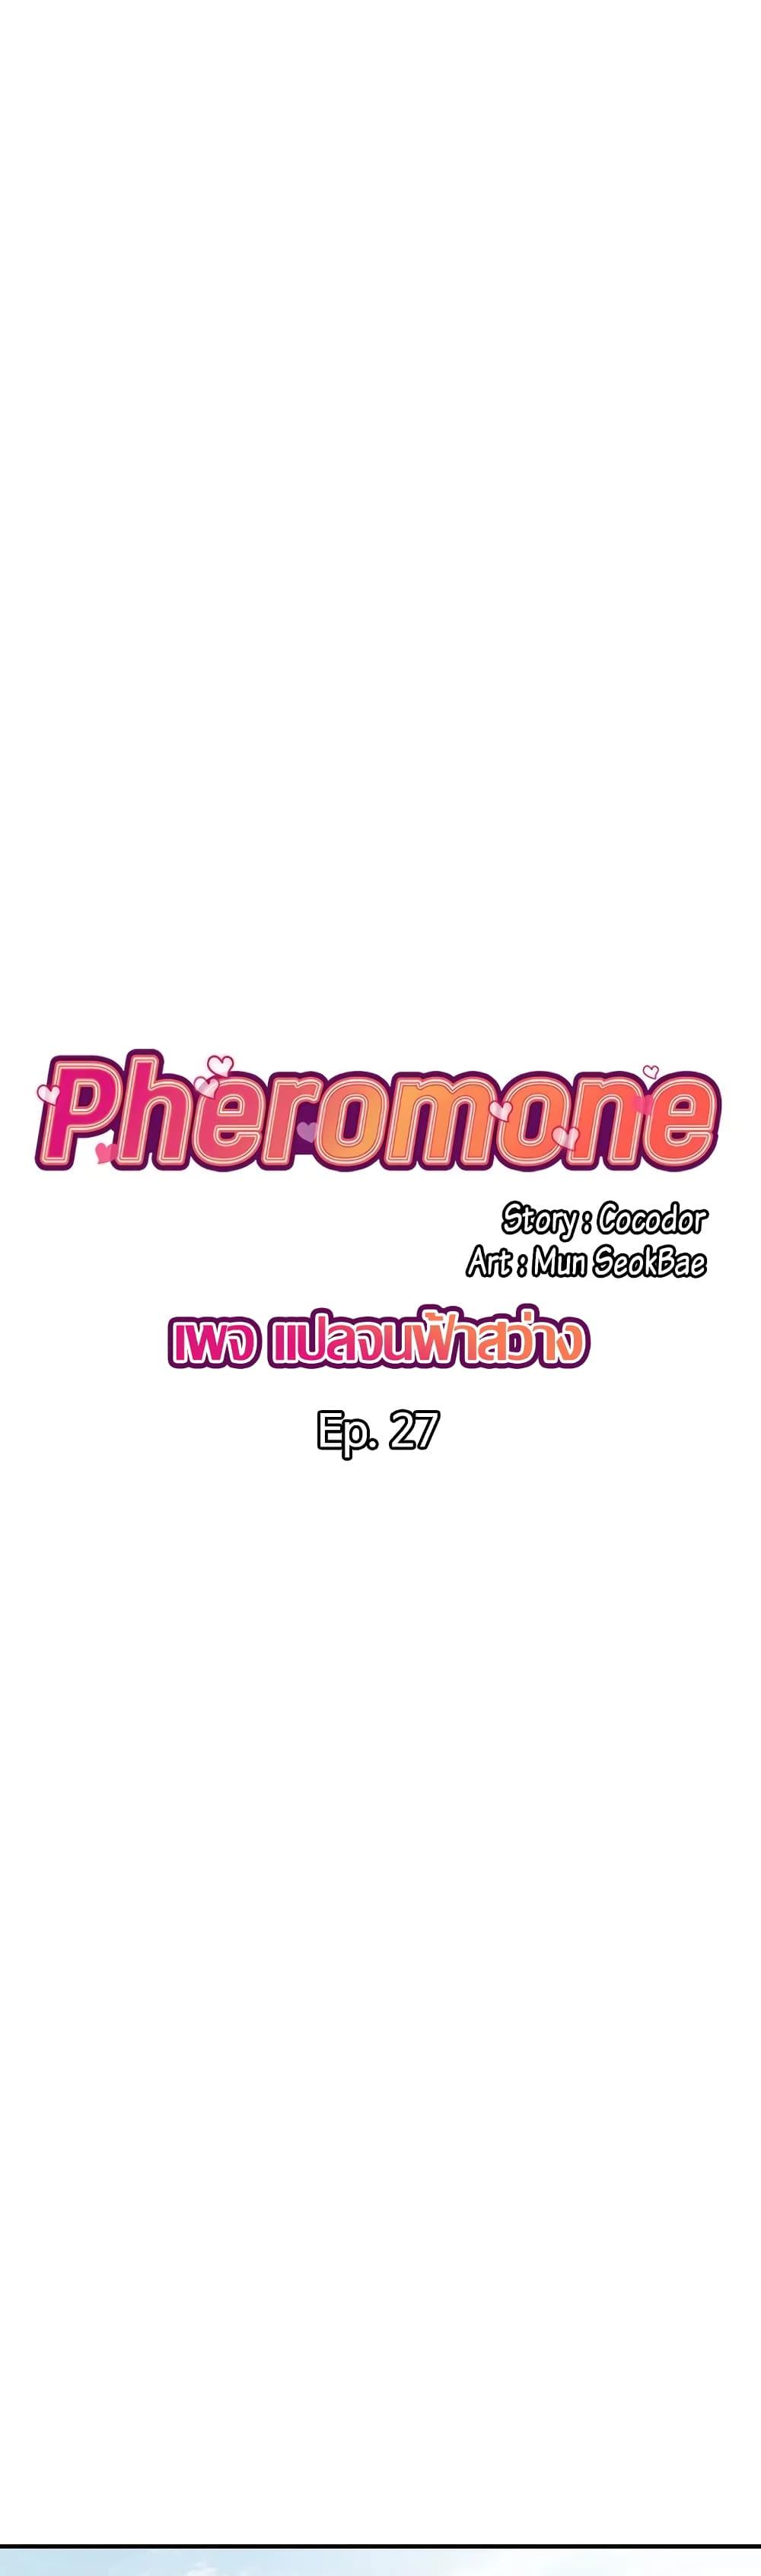 Pheromones 27 02